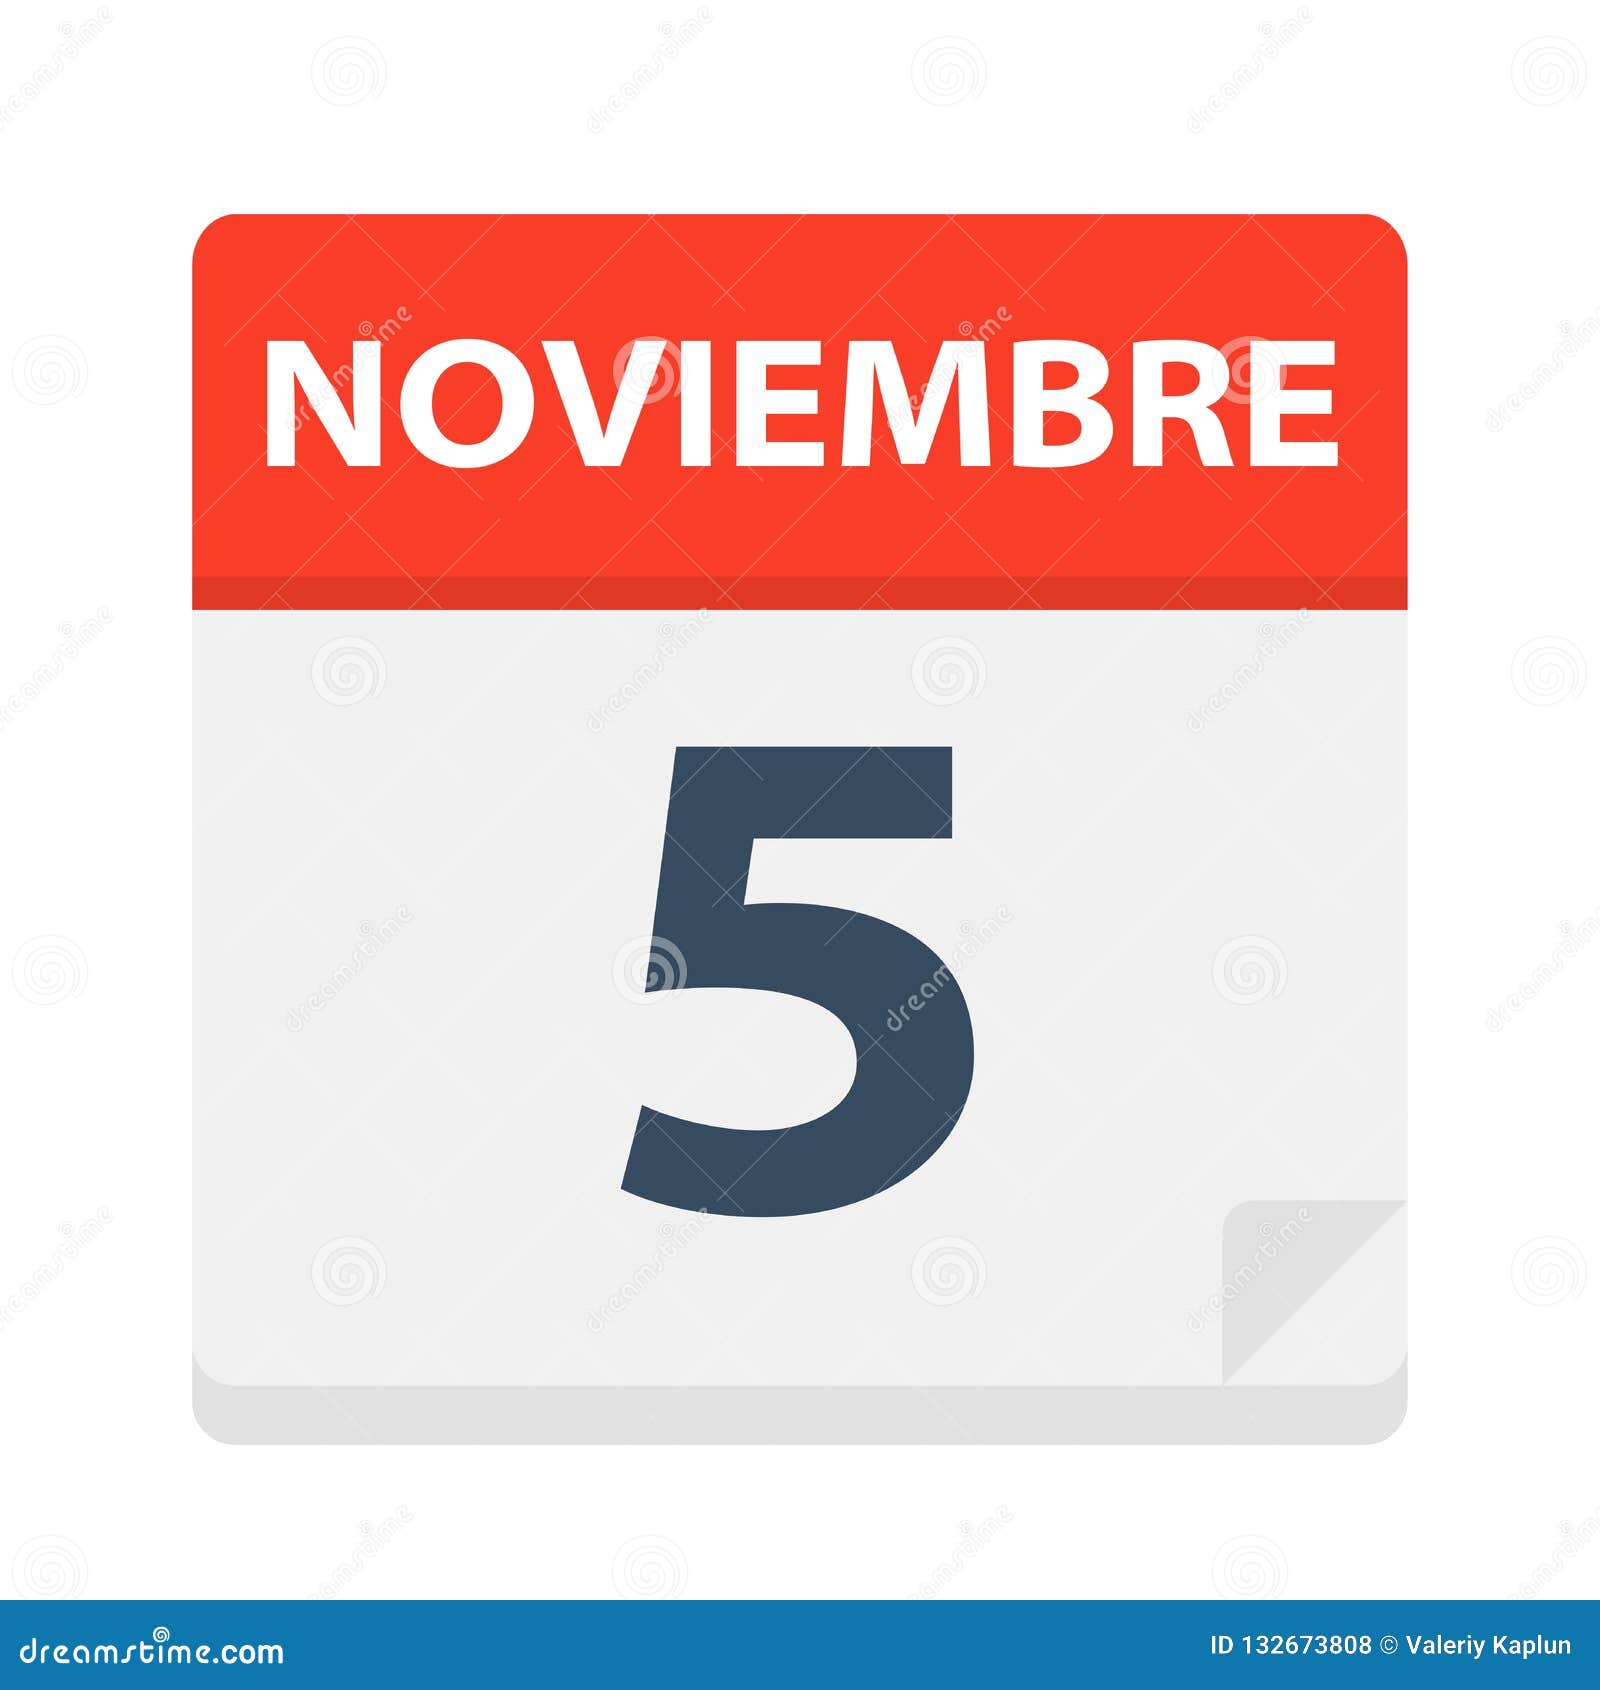 noviembre 5 - calendar icon - november 5.   of spanish calendar leaf